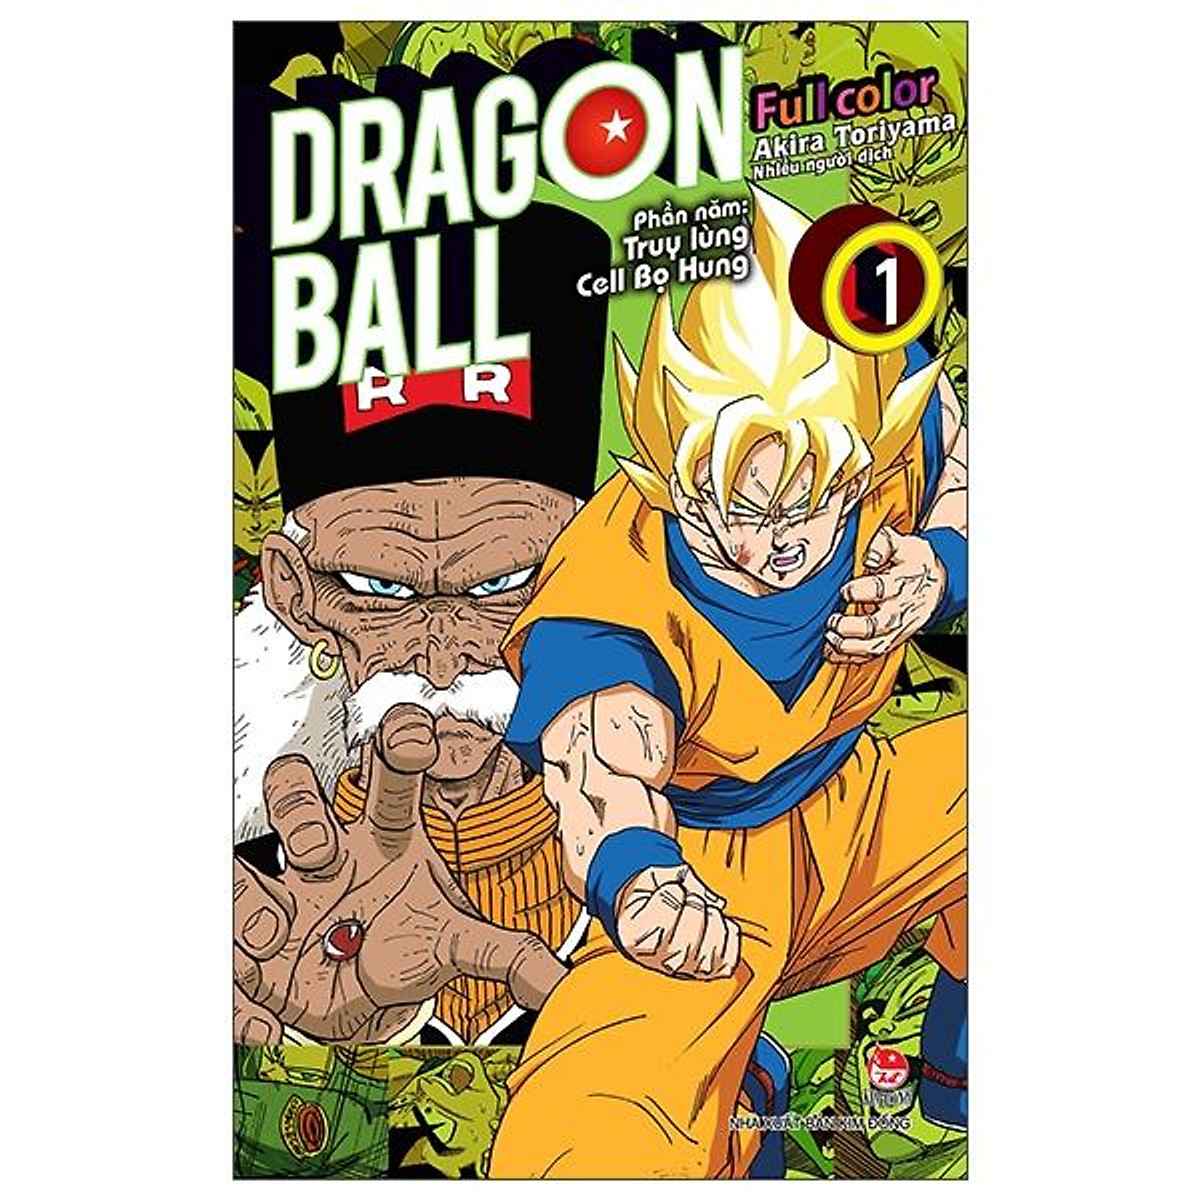 Dragon Ball Full Color - Phần Năm: Truy Lùng Cell Bọ Hung - Tập 1 - Tặng  Kèm Ngẫu